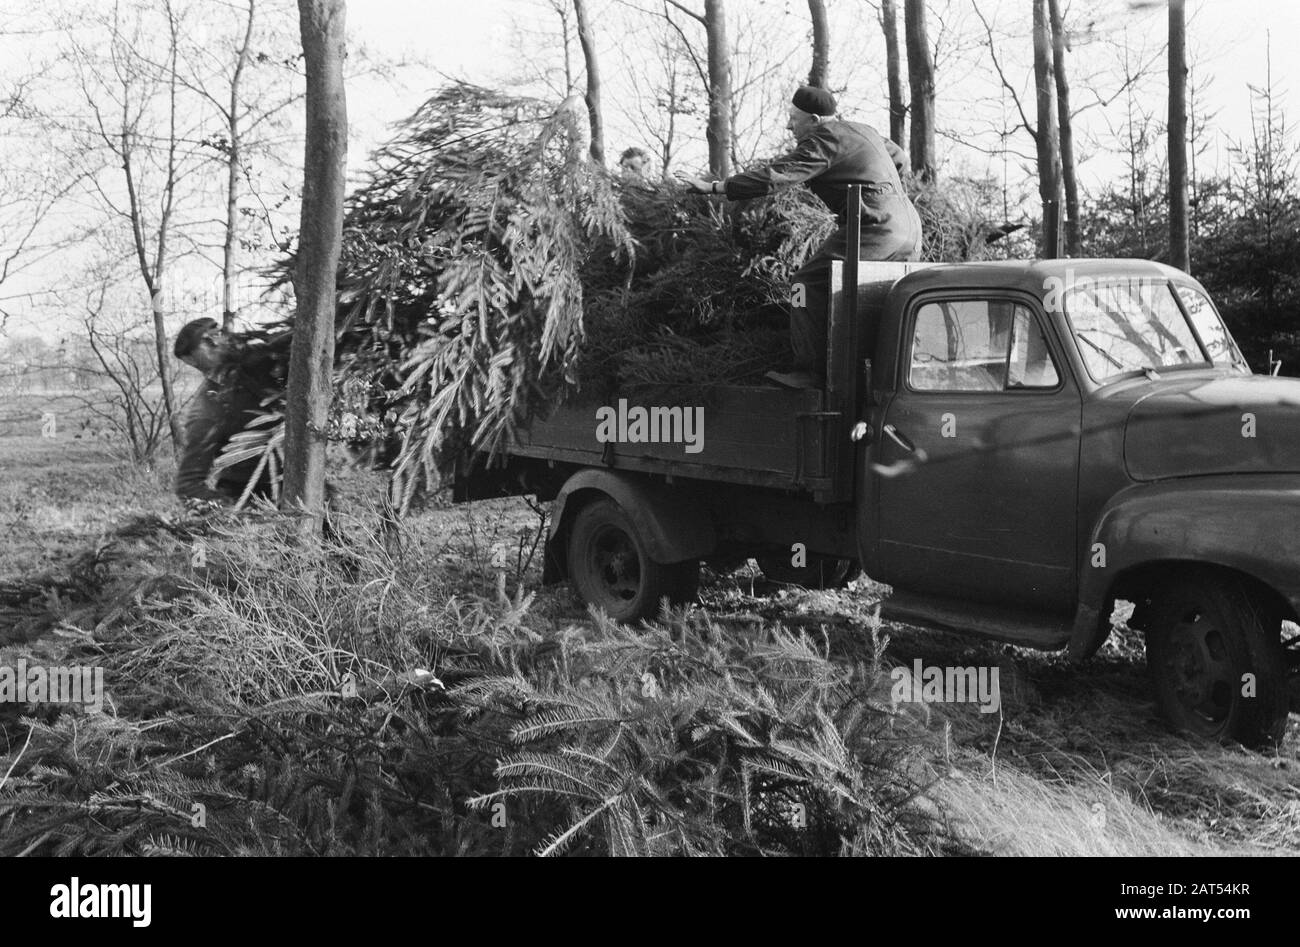 Weihnachtsbaum auf dem Anwesen Pijnenburg gefällt. Aufladen auf Lastwagen von Weihnachtsbäumen Datum: 11. Dezember 1961 Stichwörter: WEIHNACHTSBÄUME, Anwesen, Lastwagen Stockfoto